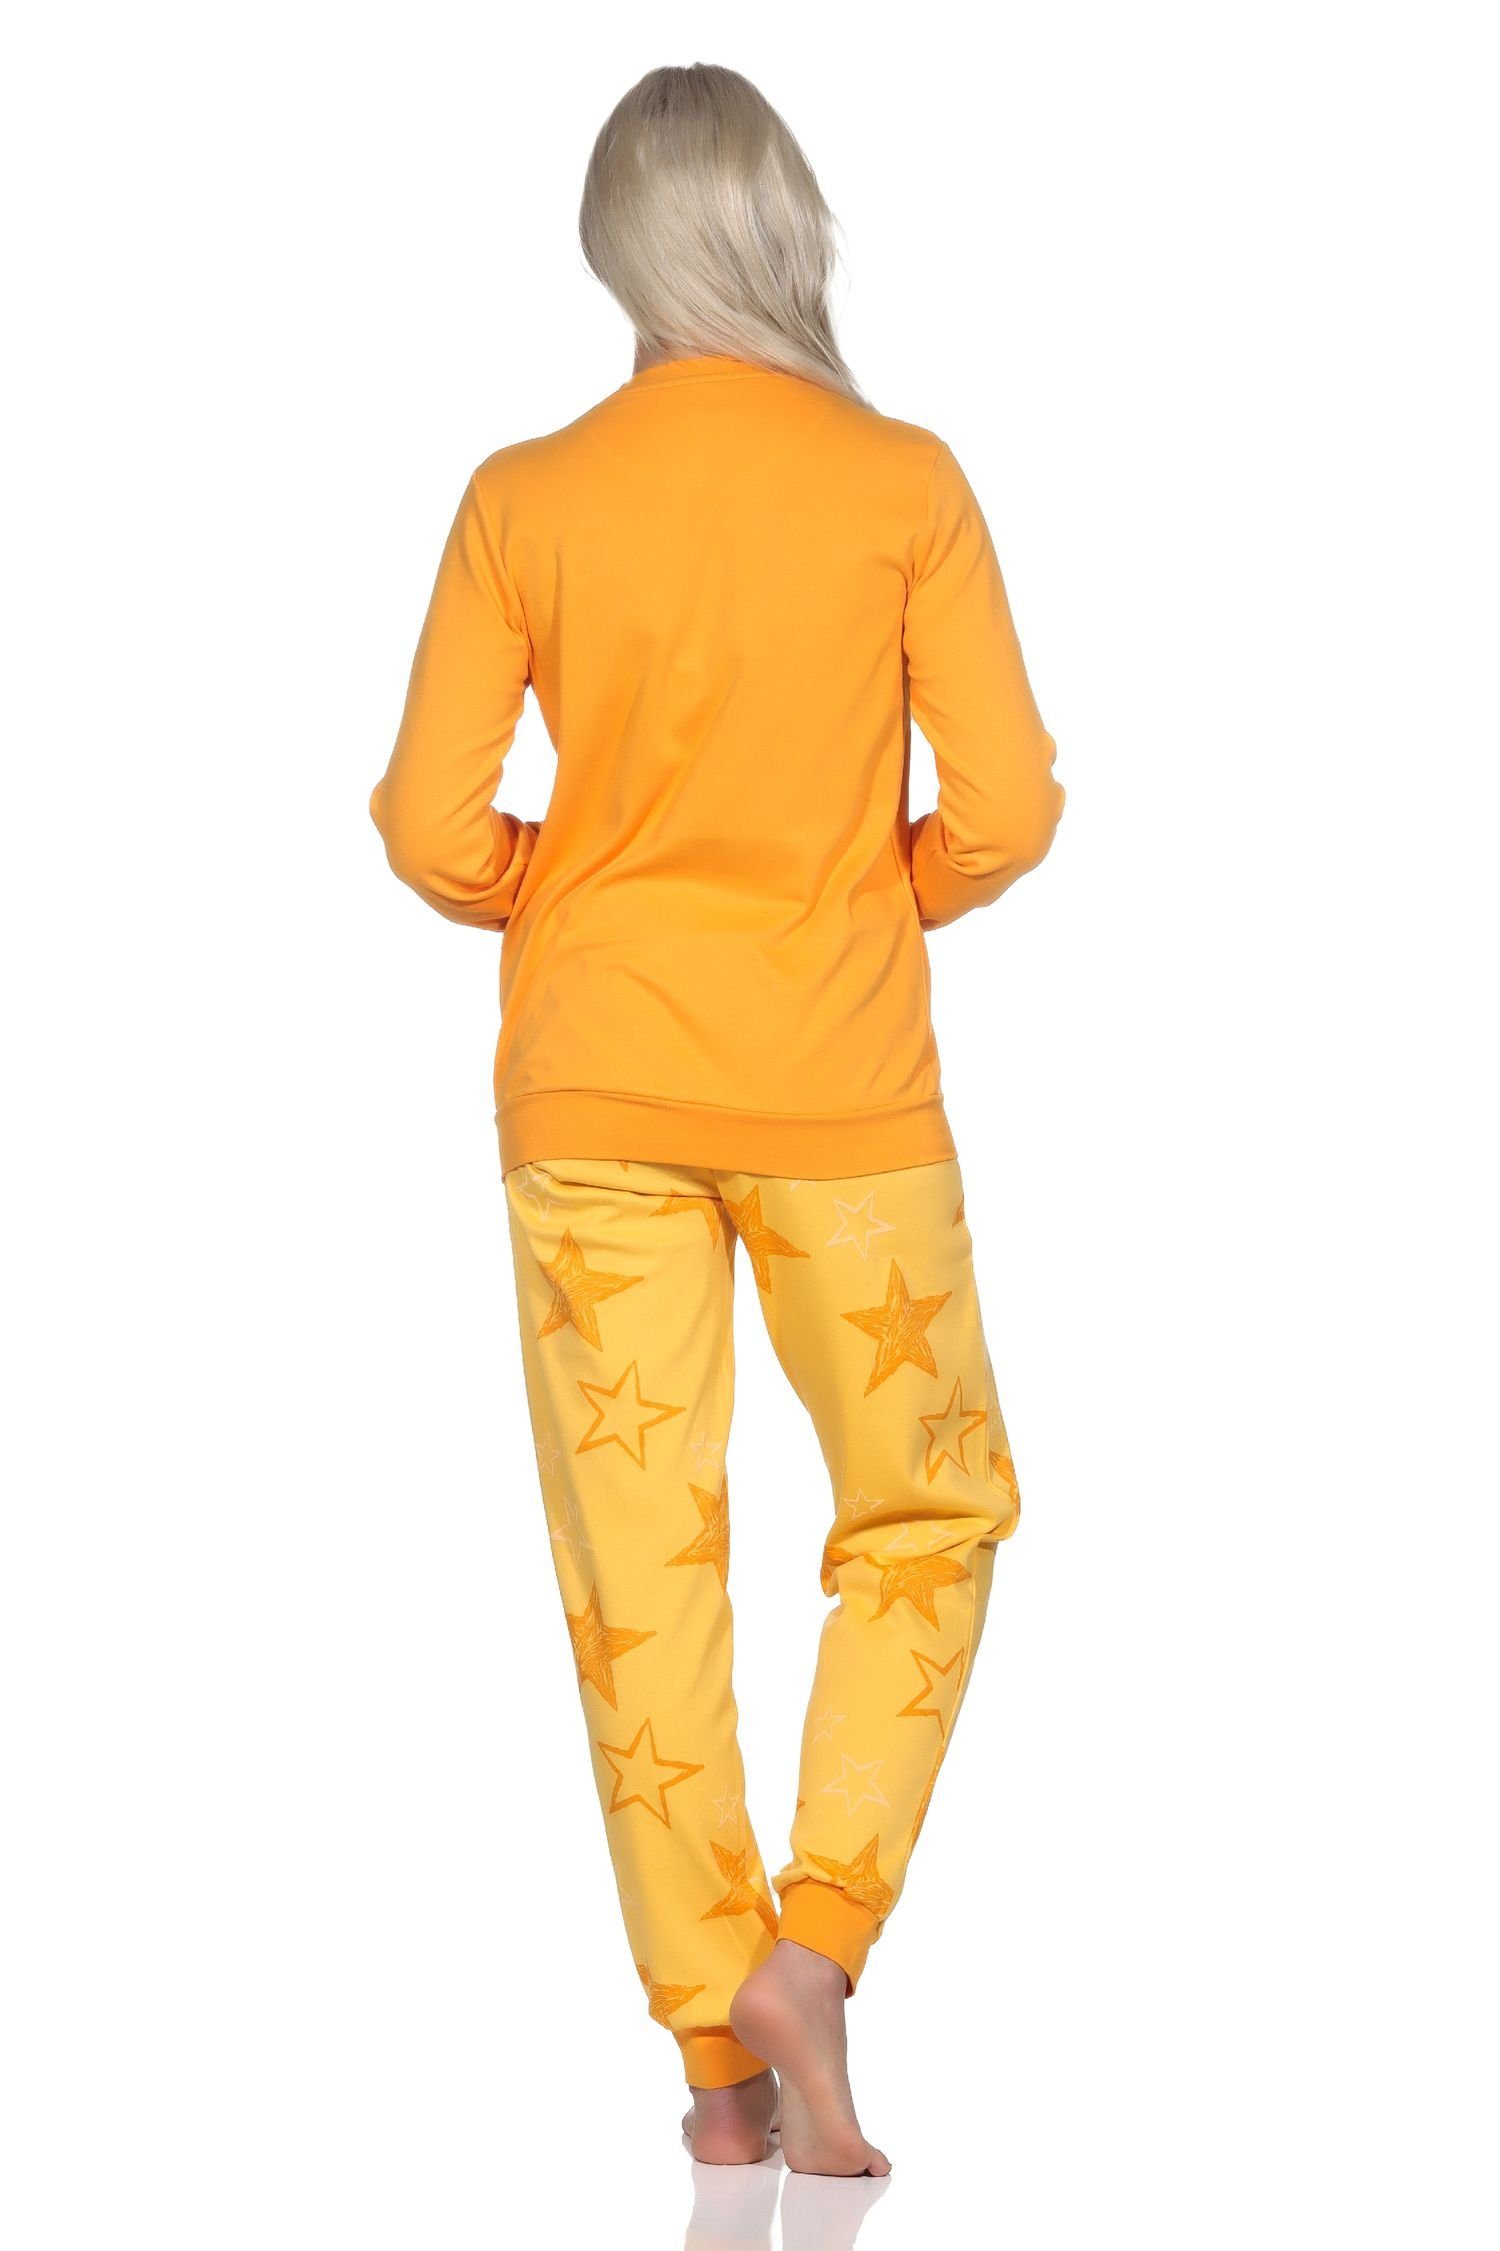 Normann Normann Optik Kuschel orange Qualität Damen Interlock Sterne Schlafanzug Pyjama in